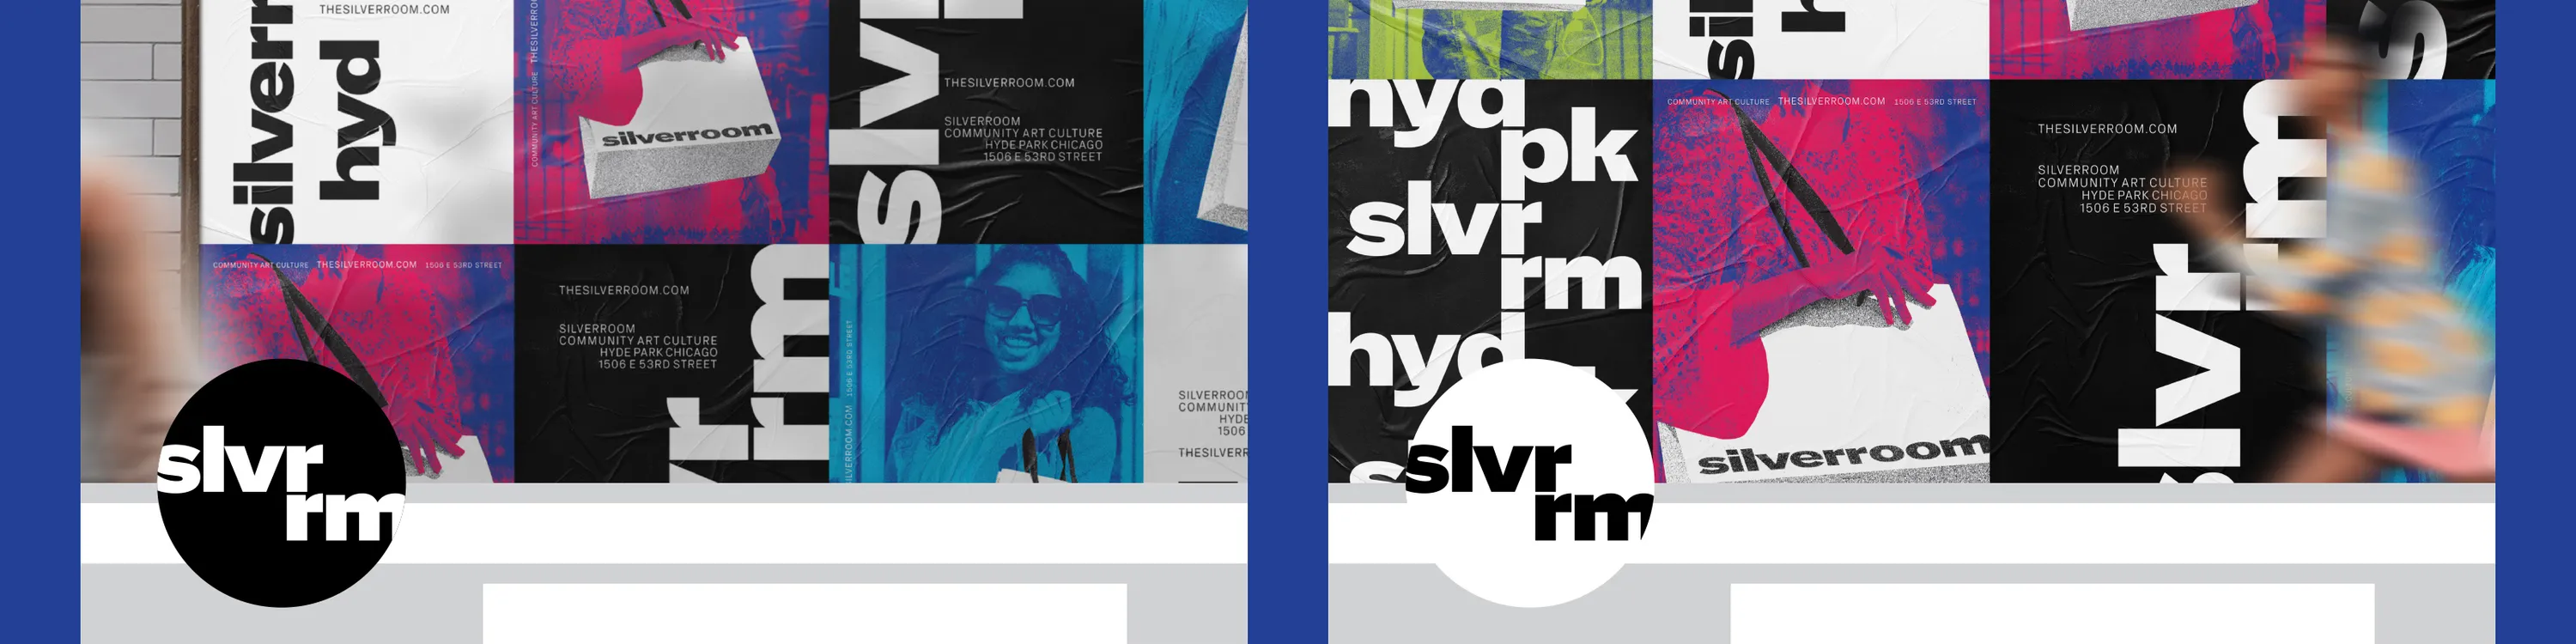 Silverroom Graphic Design Ad Campaign Social Media Header Typography Span 04